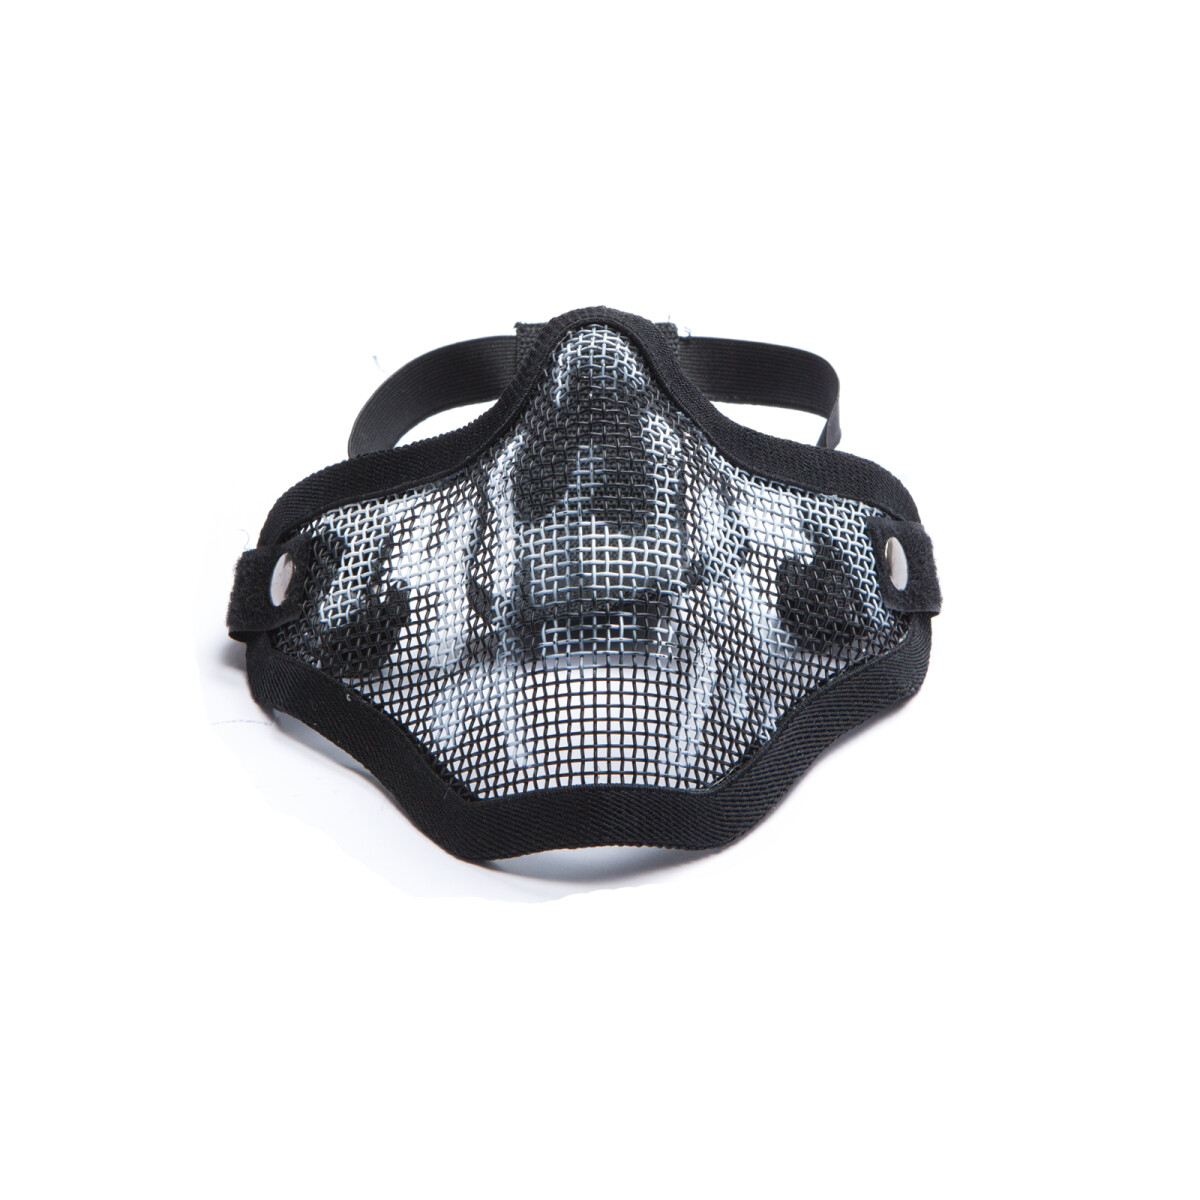 Metal mesh mask w. skull print